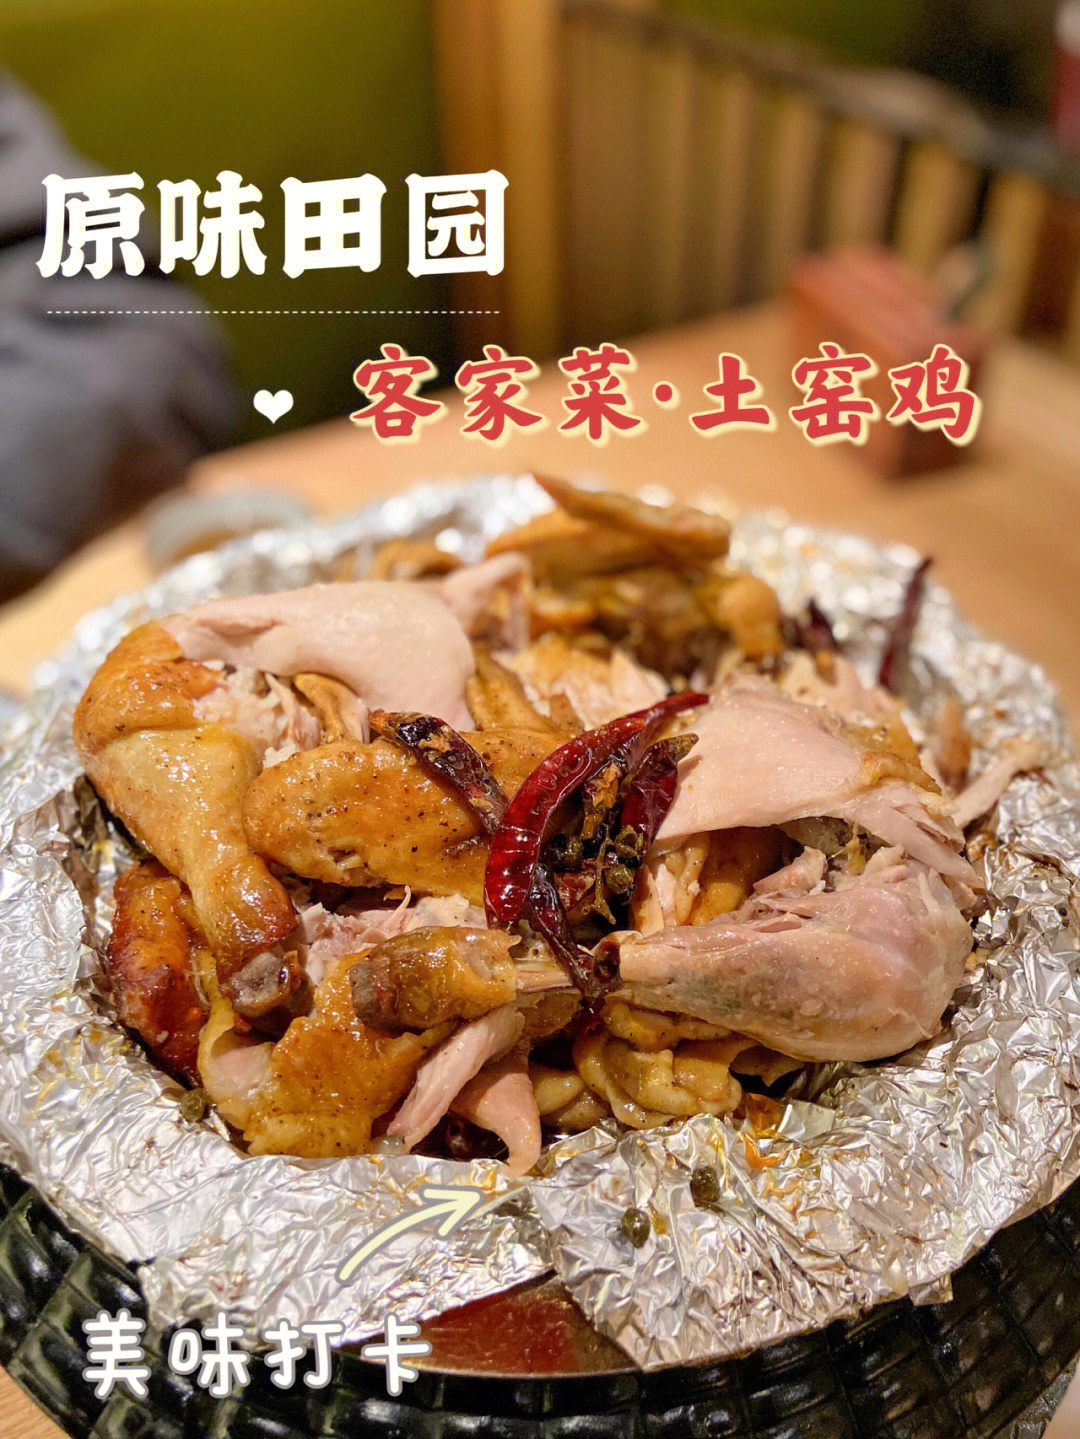 深圳美食原味田园客家菜土窑鸡